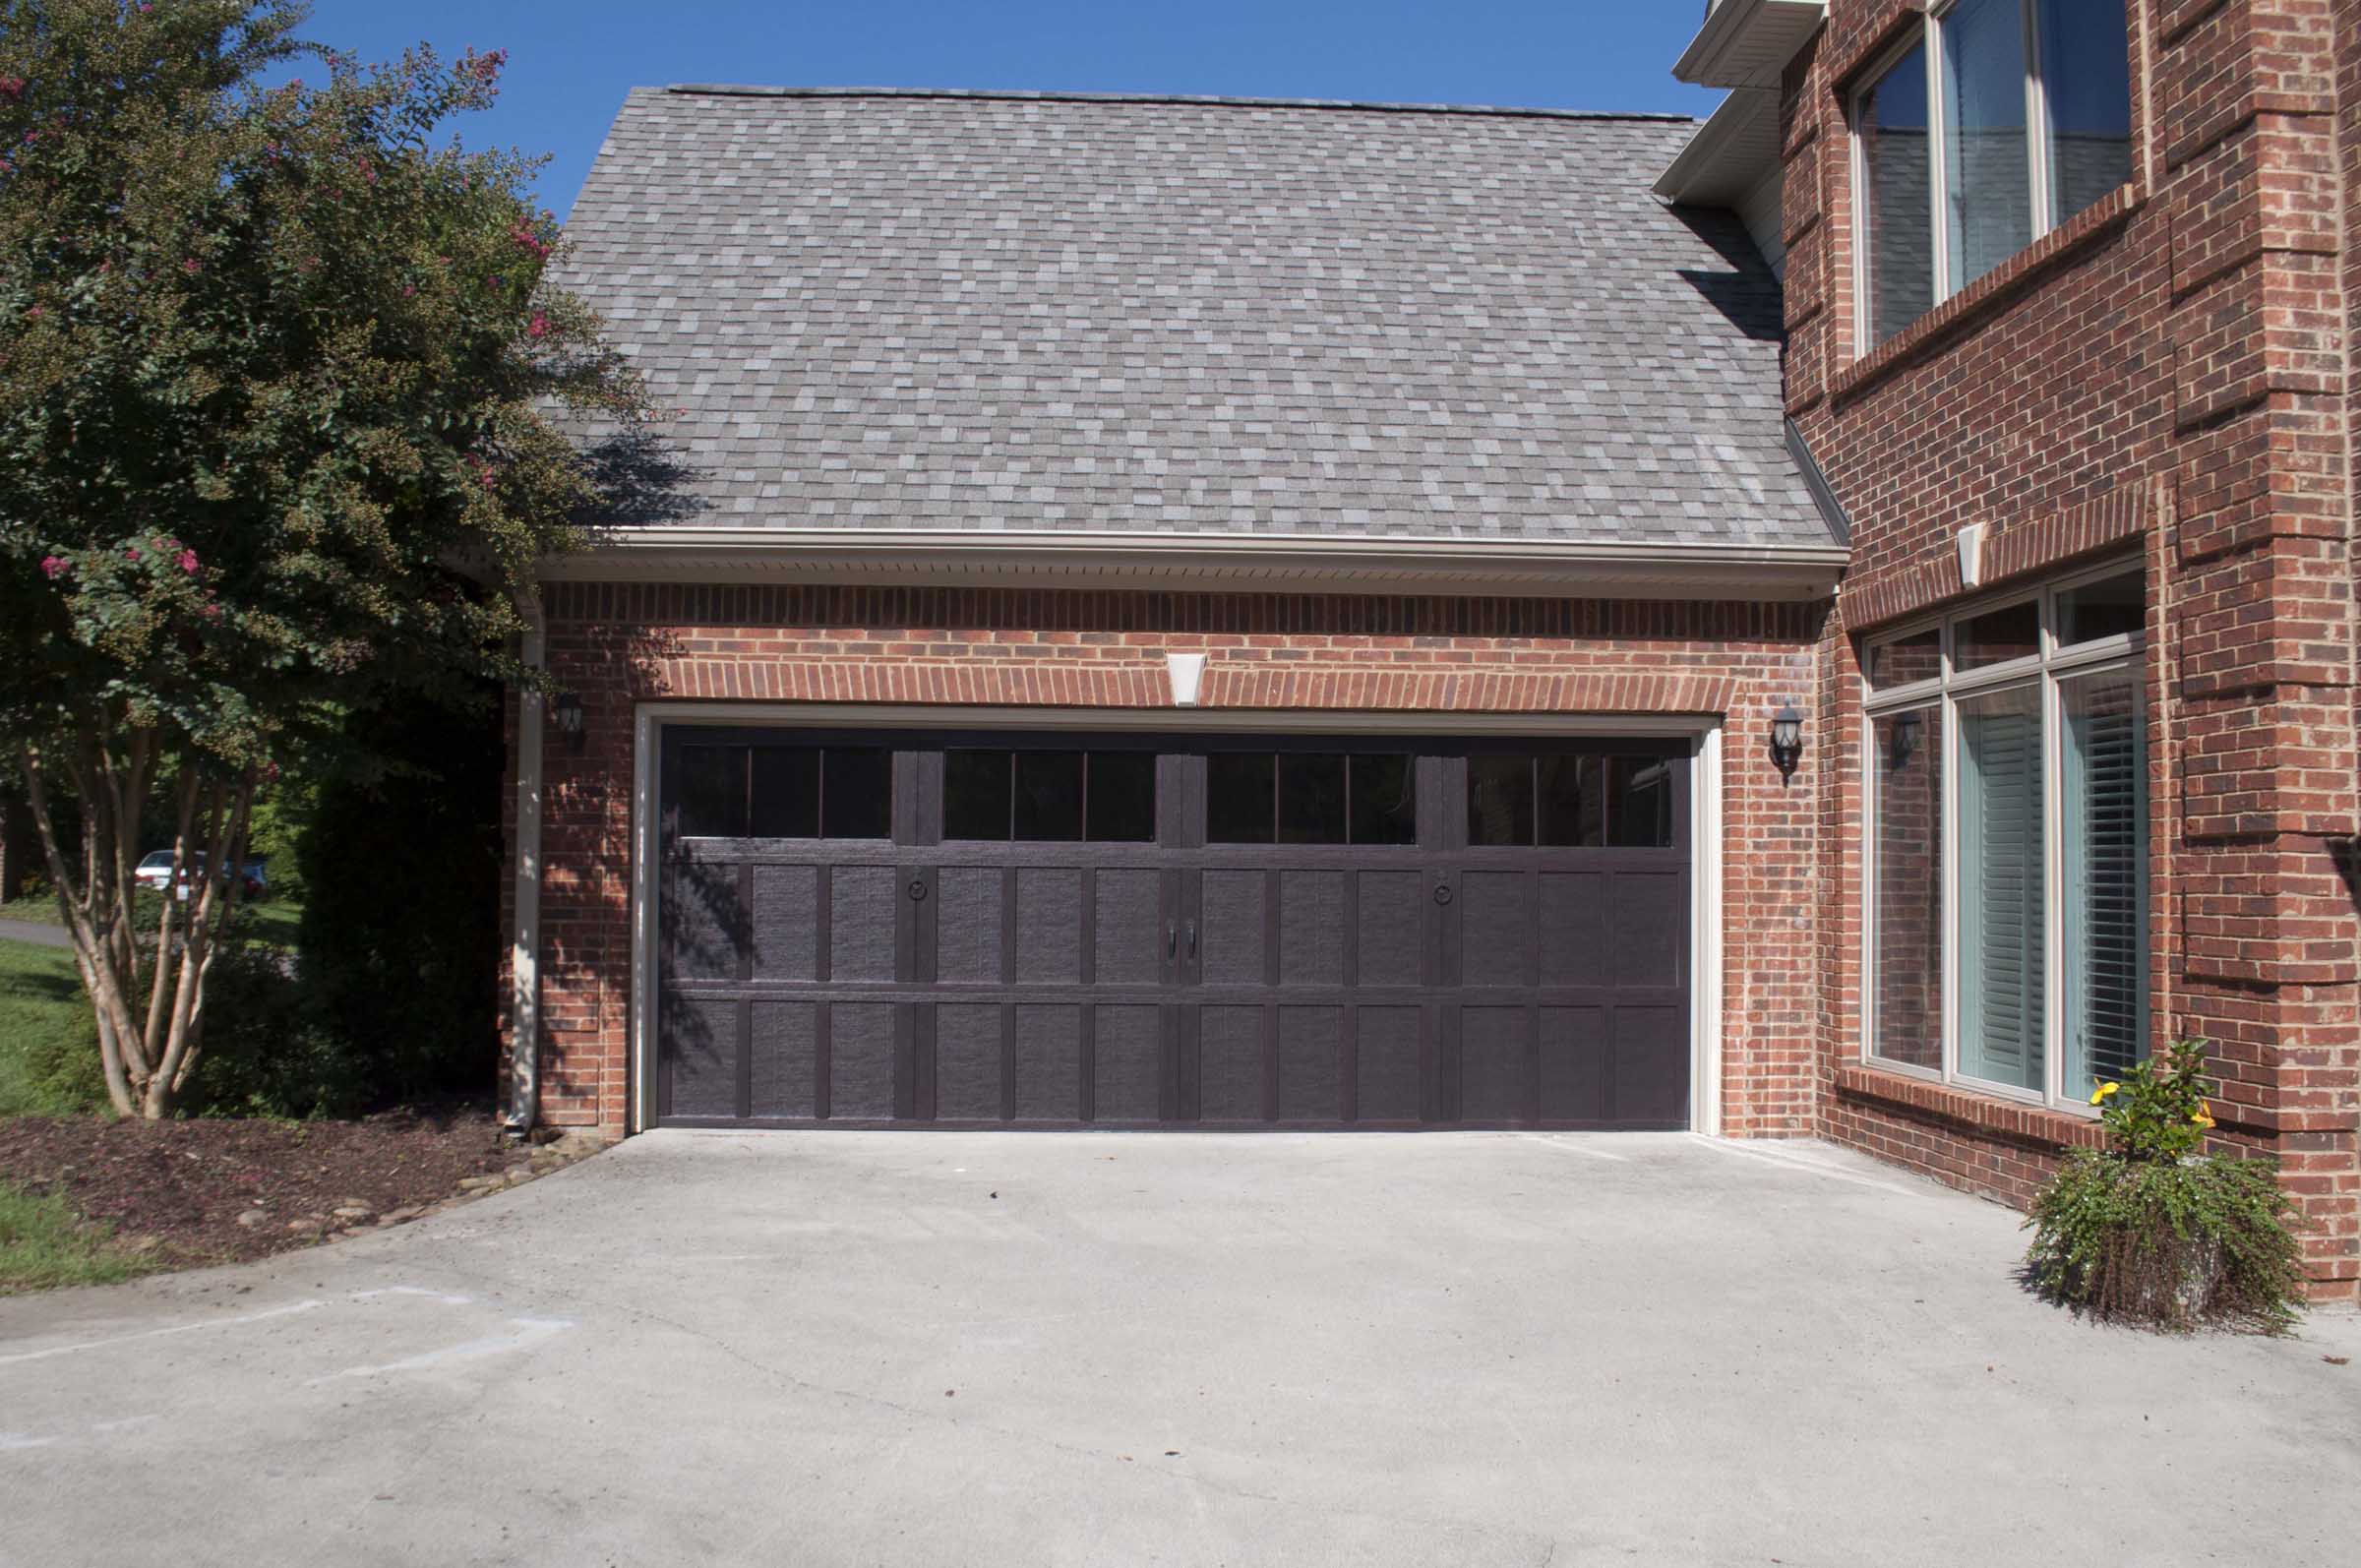 Knoxville Garage Door - Residential Impression Steel & Fiberglass Garage Doors Project with Photos